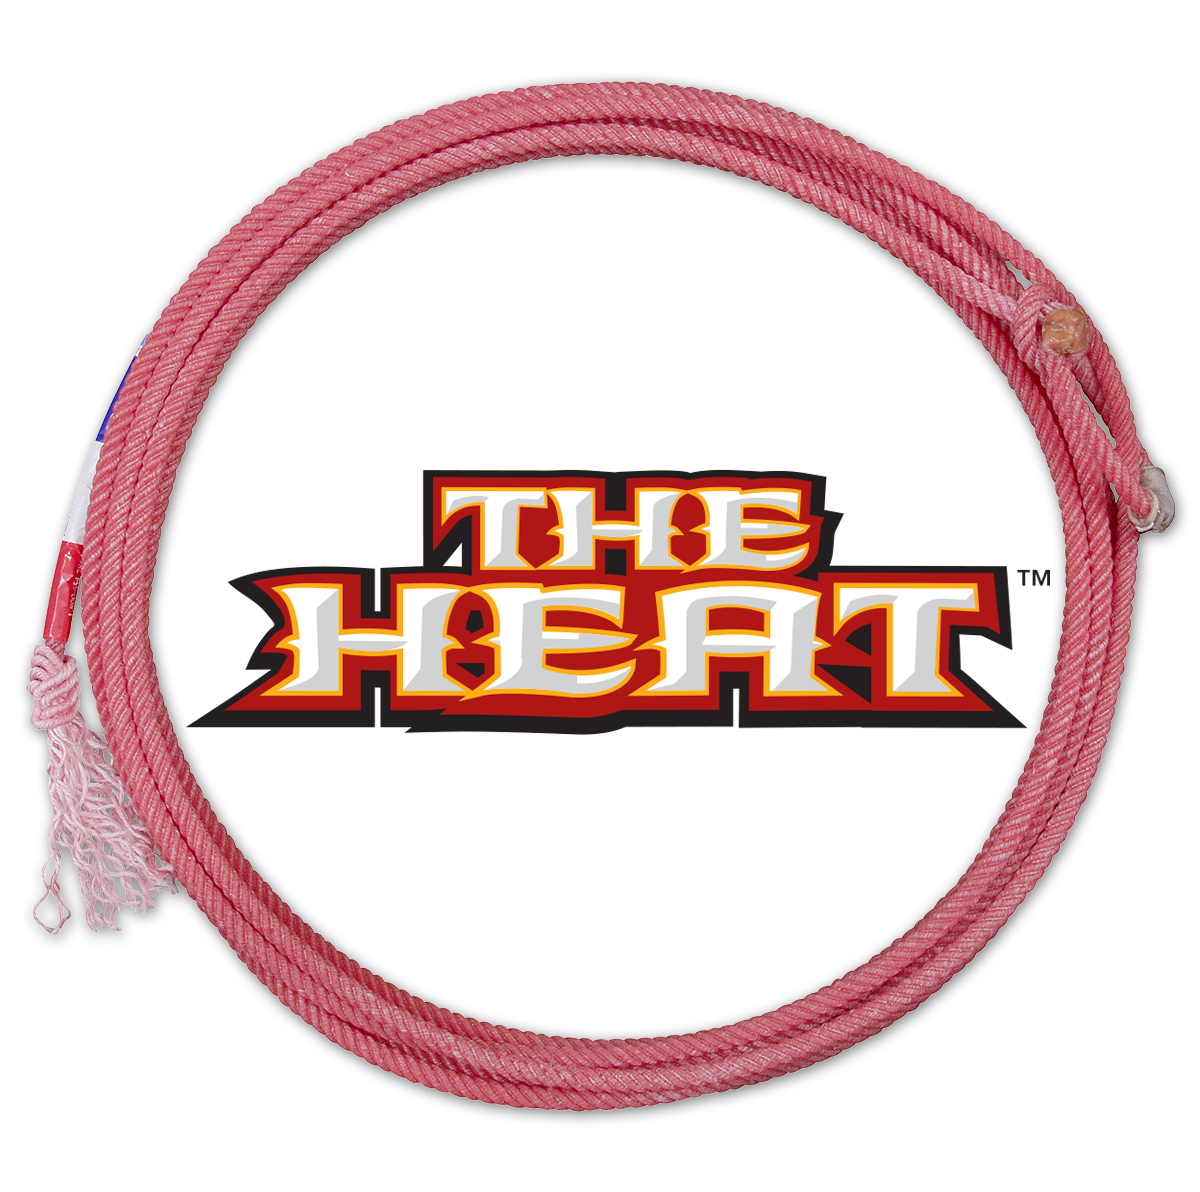 Heat Heel Rope